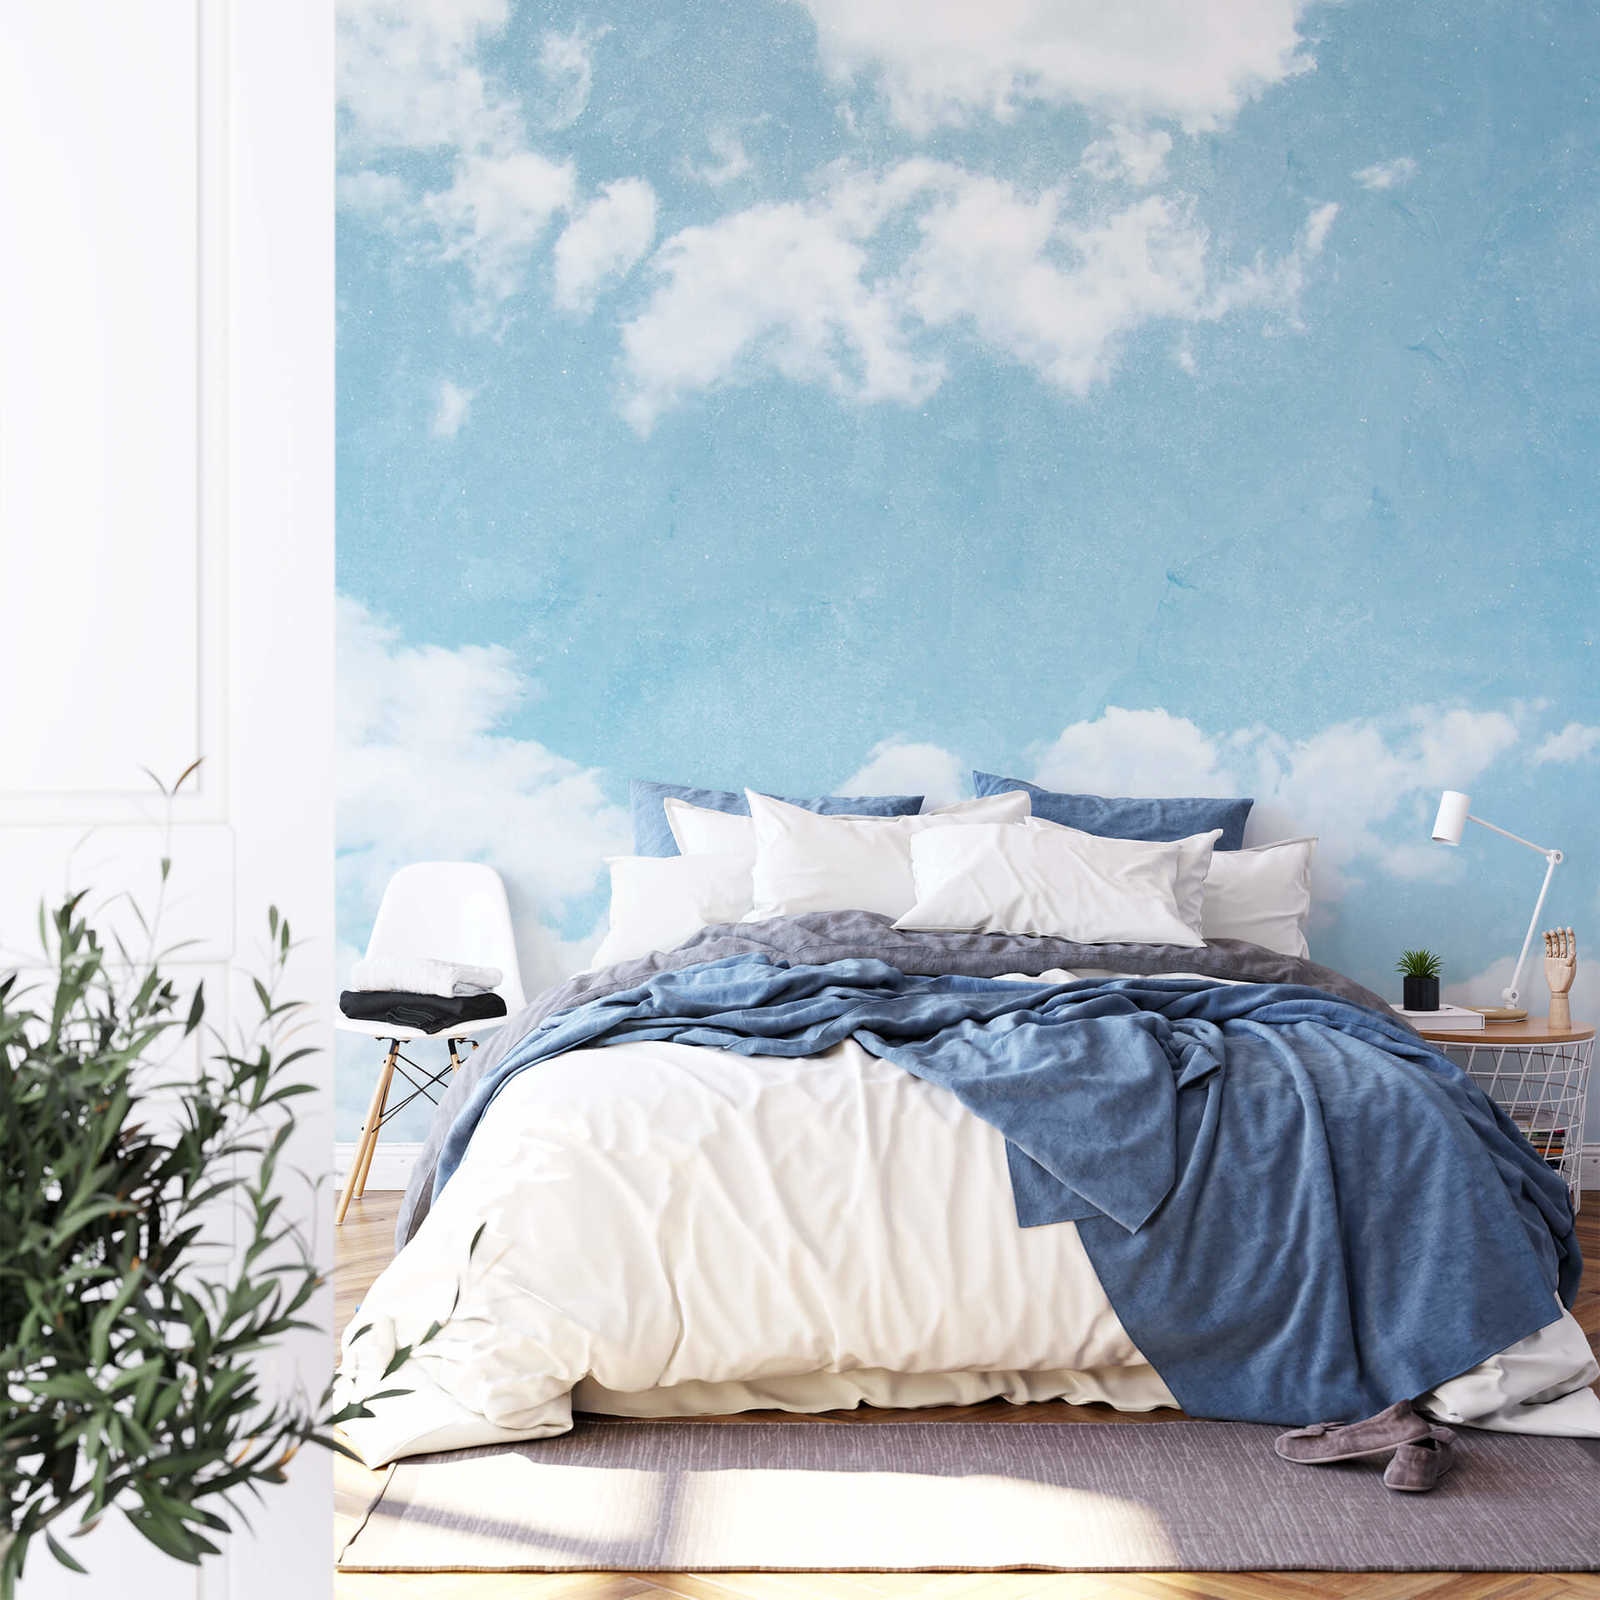             Mural cielo nublado - azul, blanco
        